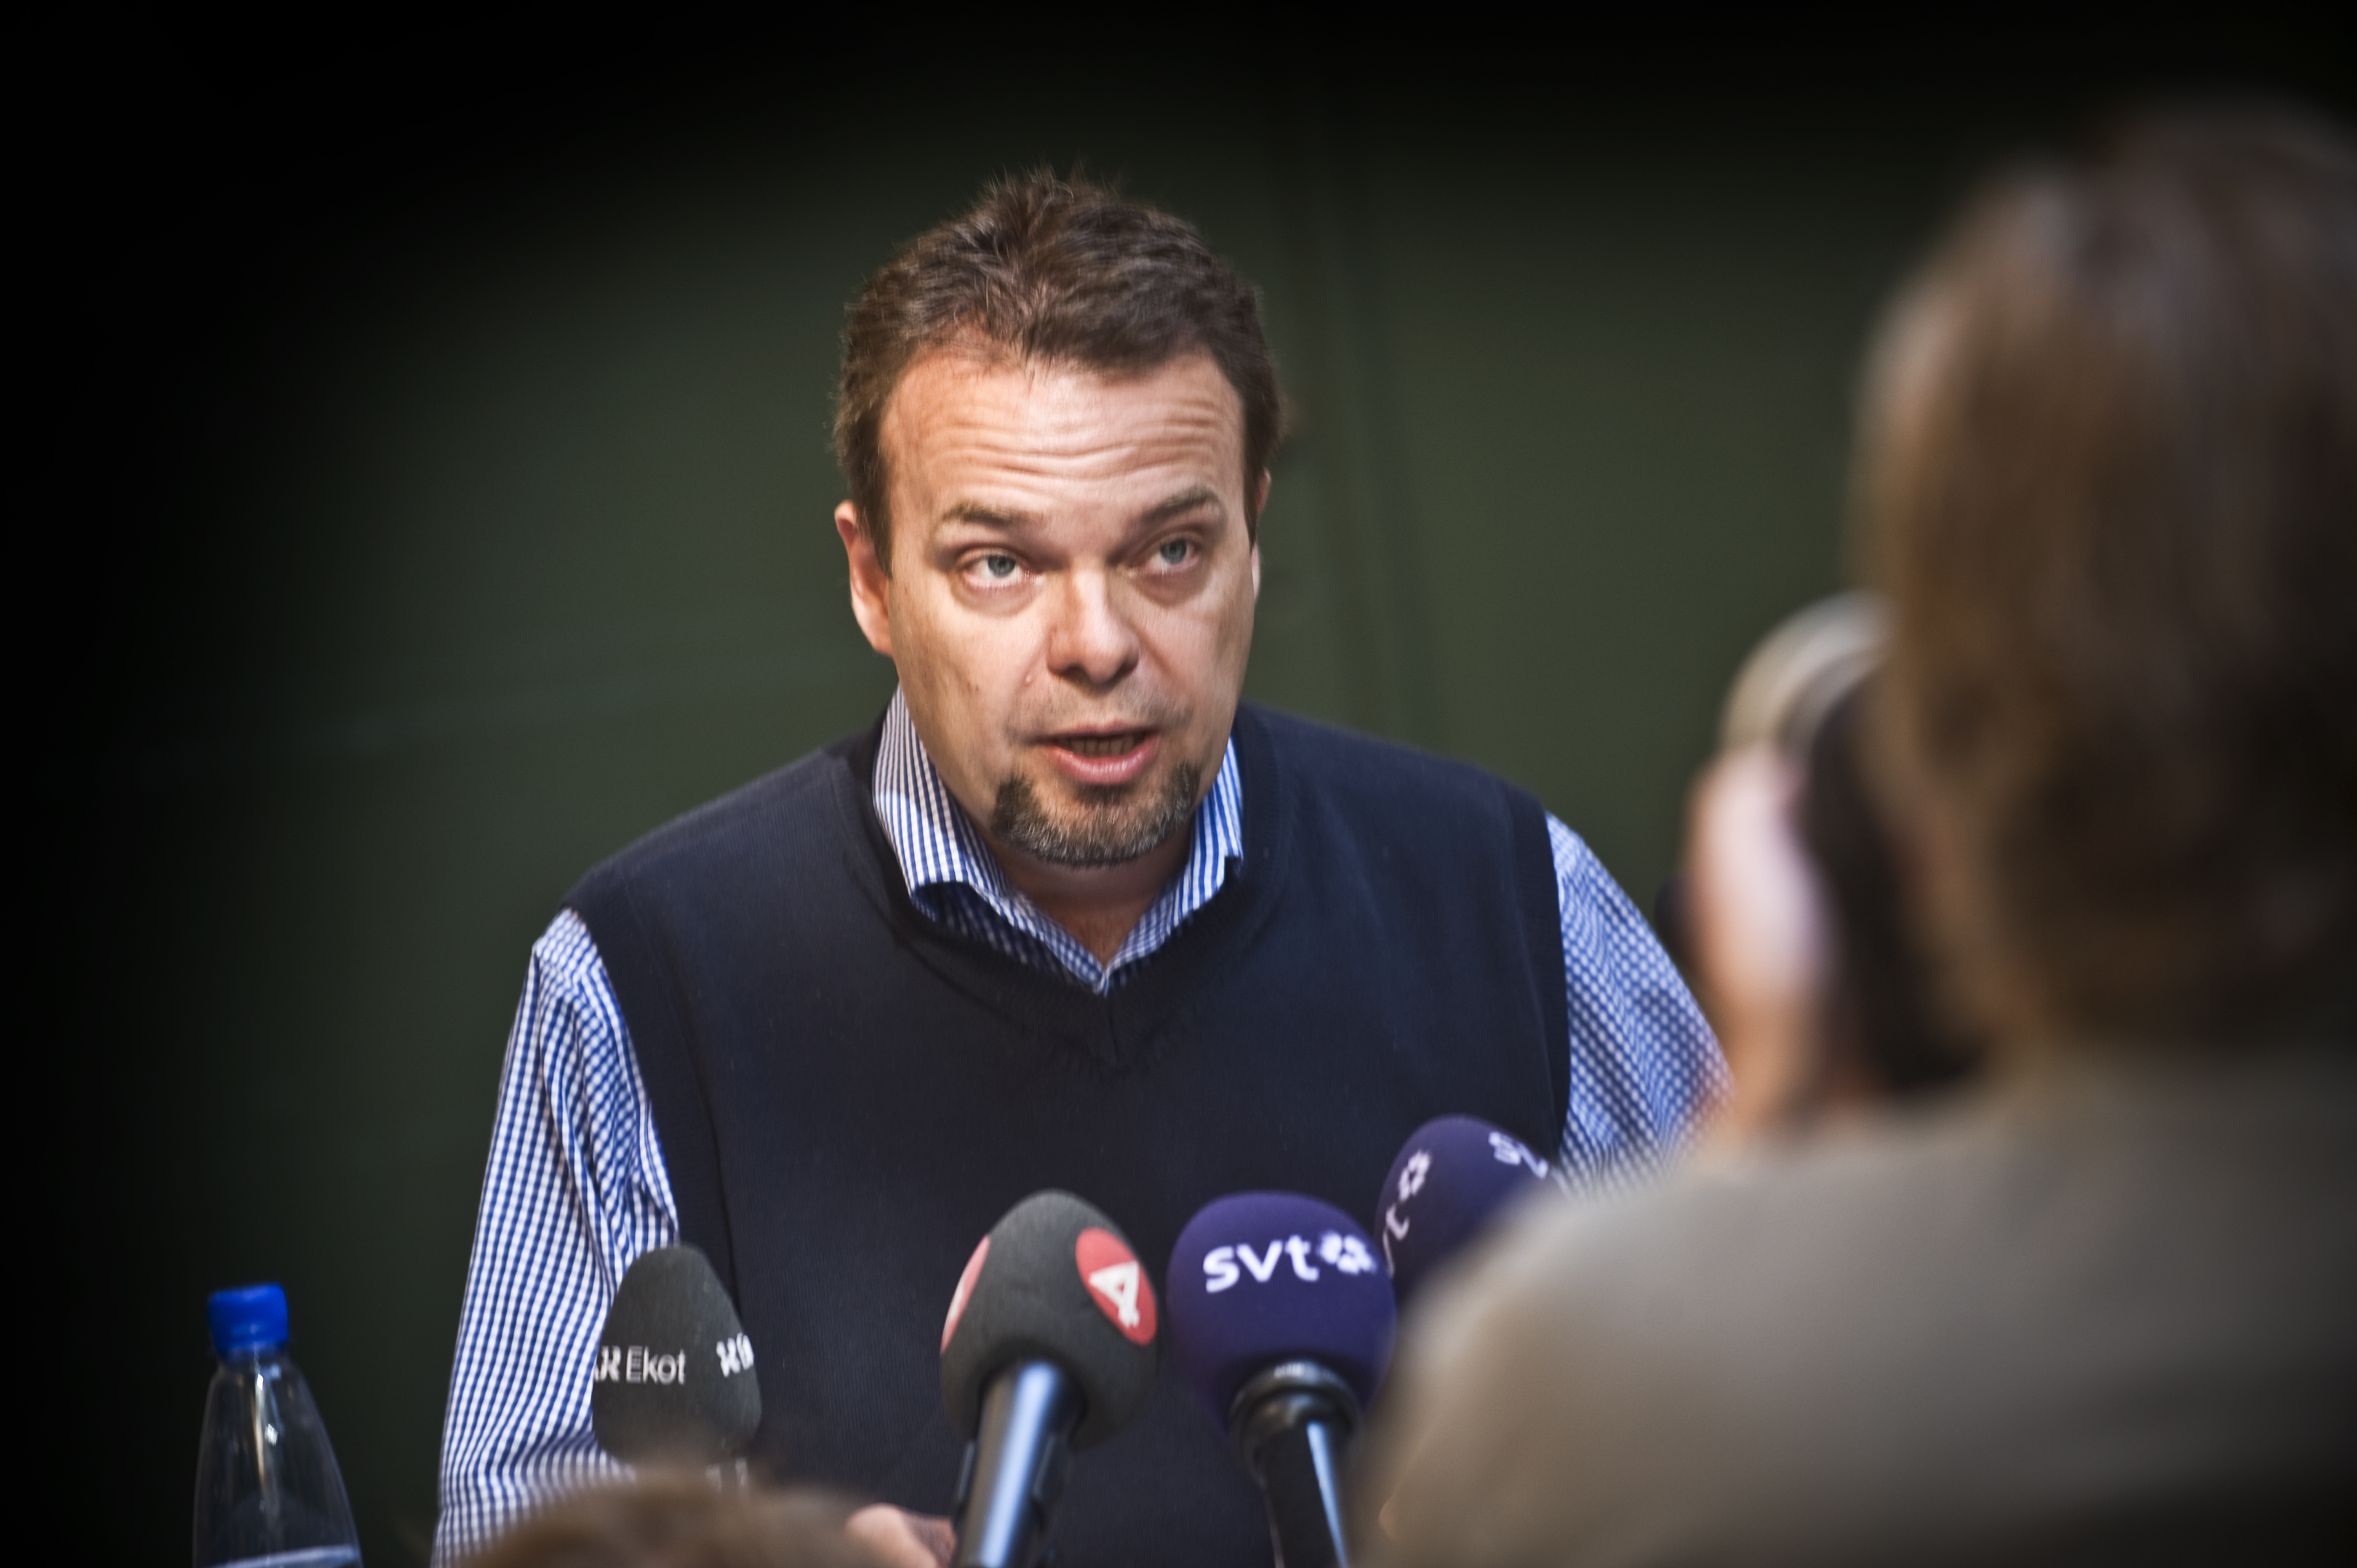 7/7/2010. Den 7 juli, mitt under Almedalsveckan, avgår moderate arbetsmarknadsministern Sven Otto Littorin sedan han pekats ut som sexköpare av bland andra tidningen Aftonbladet. 